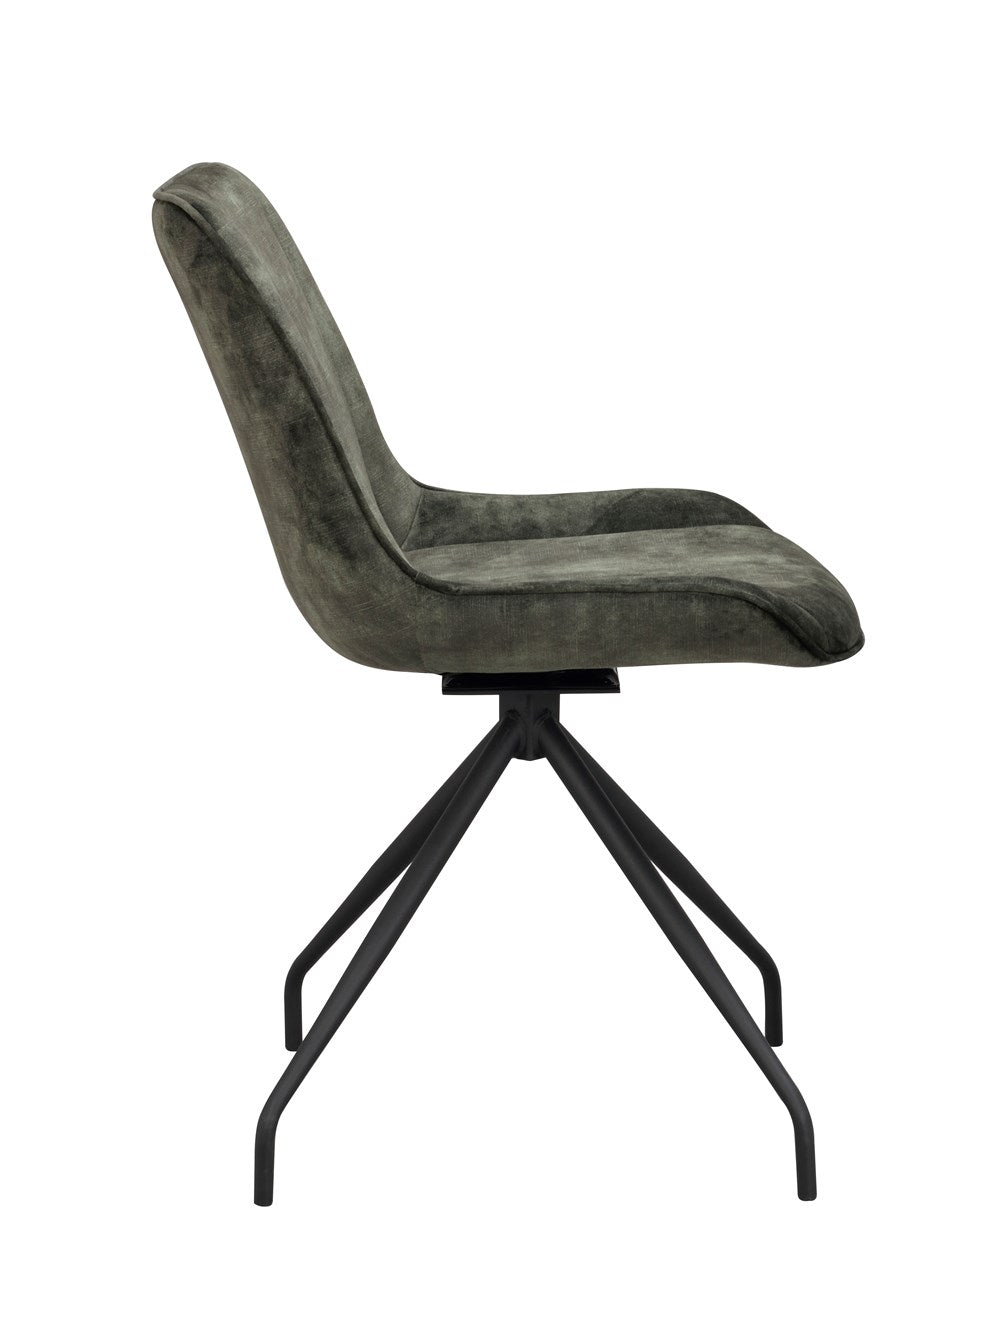 120081_c-rossport-chair-green-velvet_black